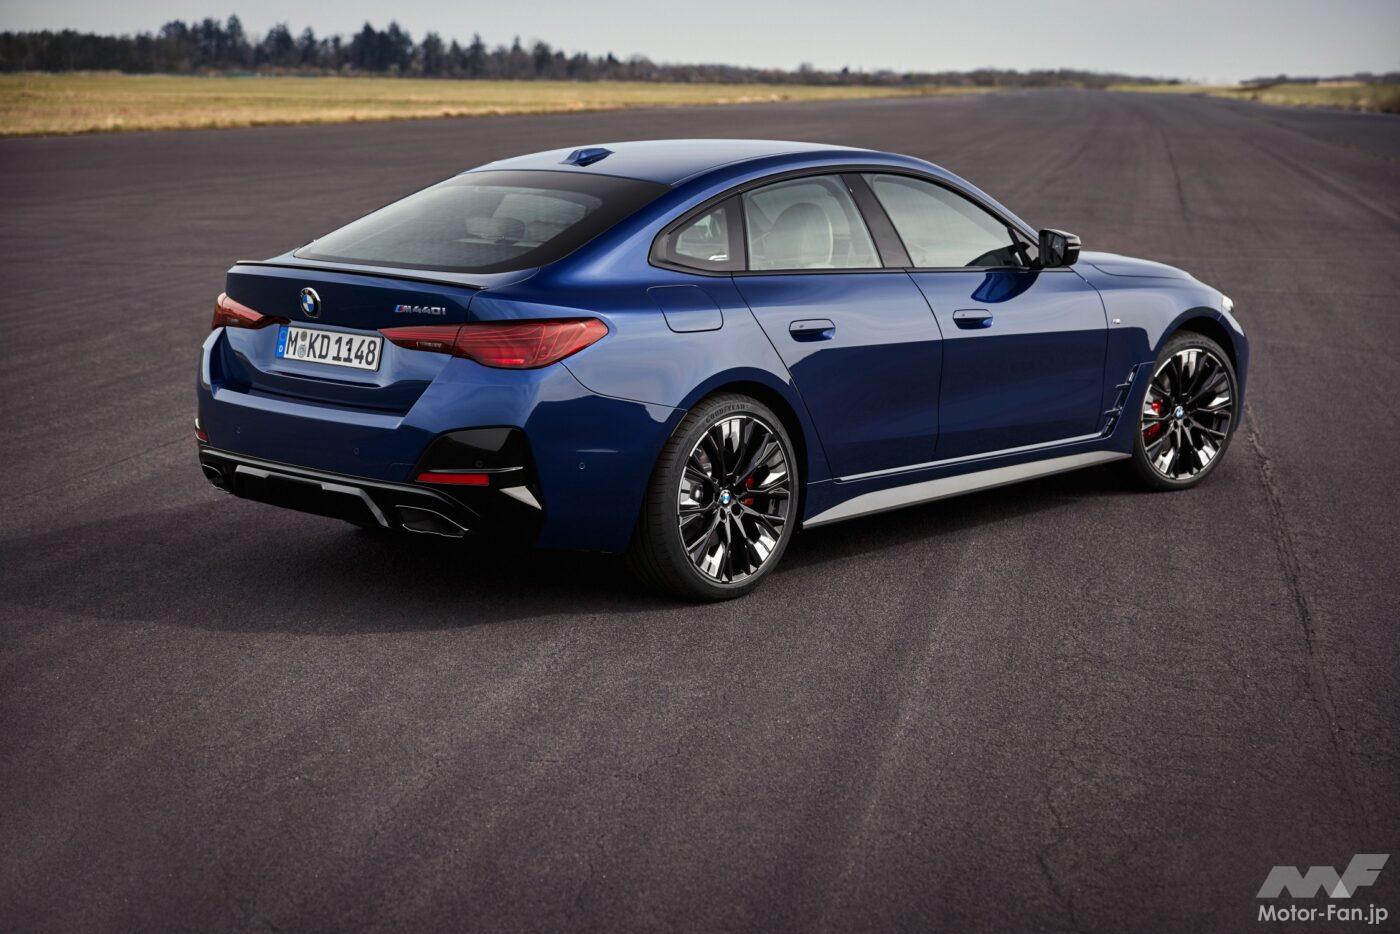 「BMW『i4』、『4シリーズ・グランクーペ』がデザインスタイルを刷新! 内外装ともにプレミアムさを増したミッドサイズモデル!」の14枚めの画像